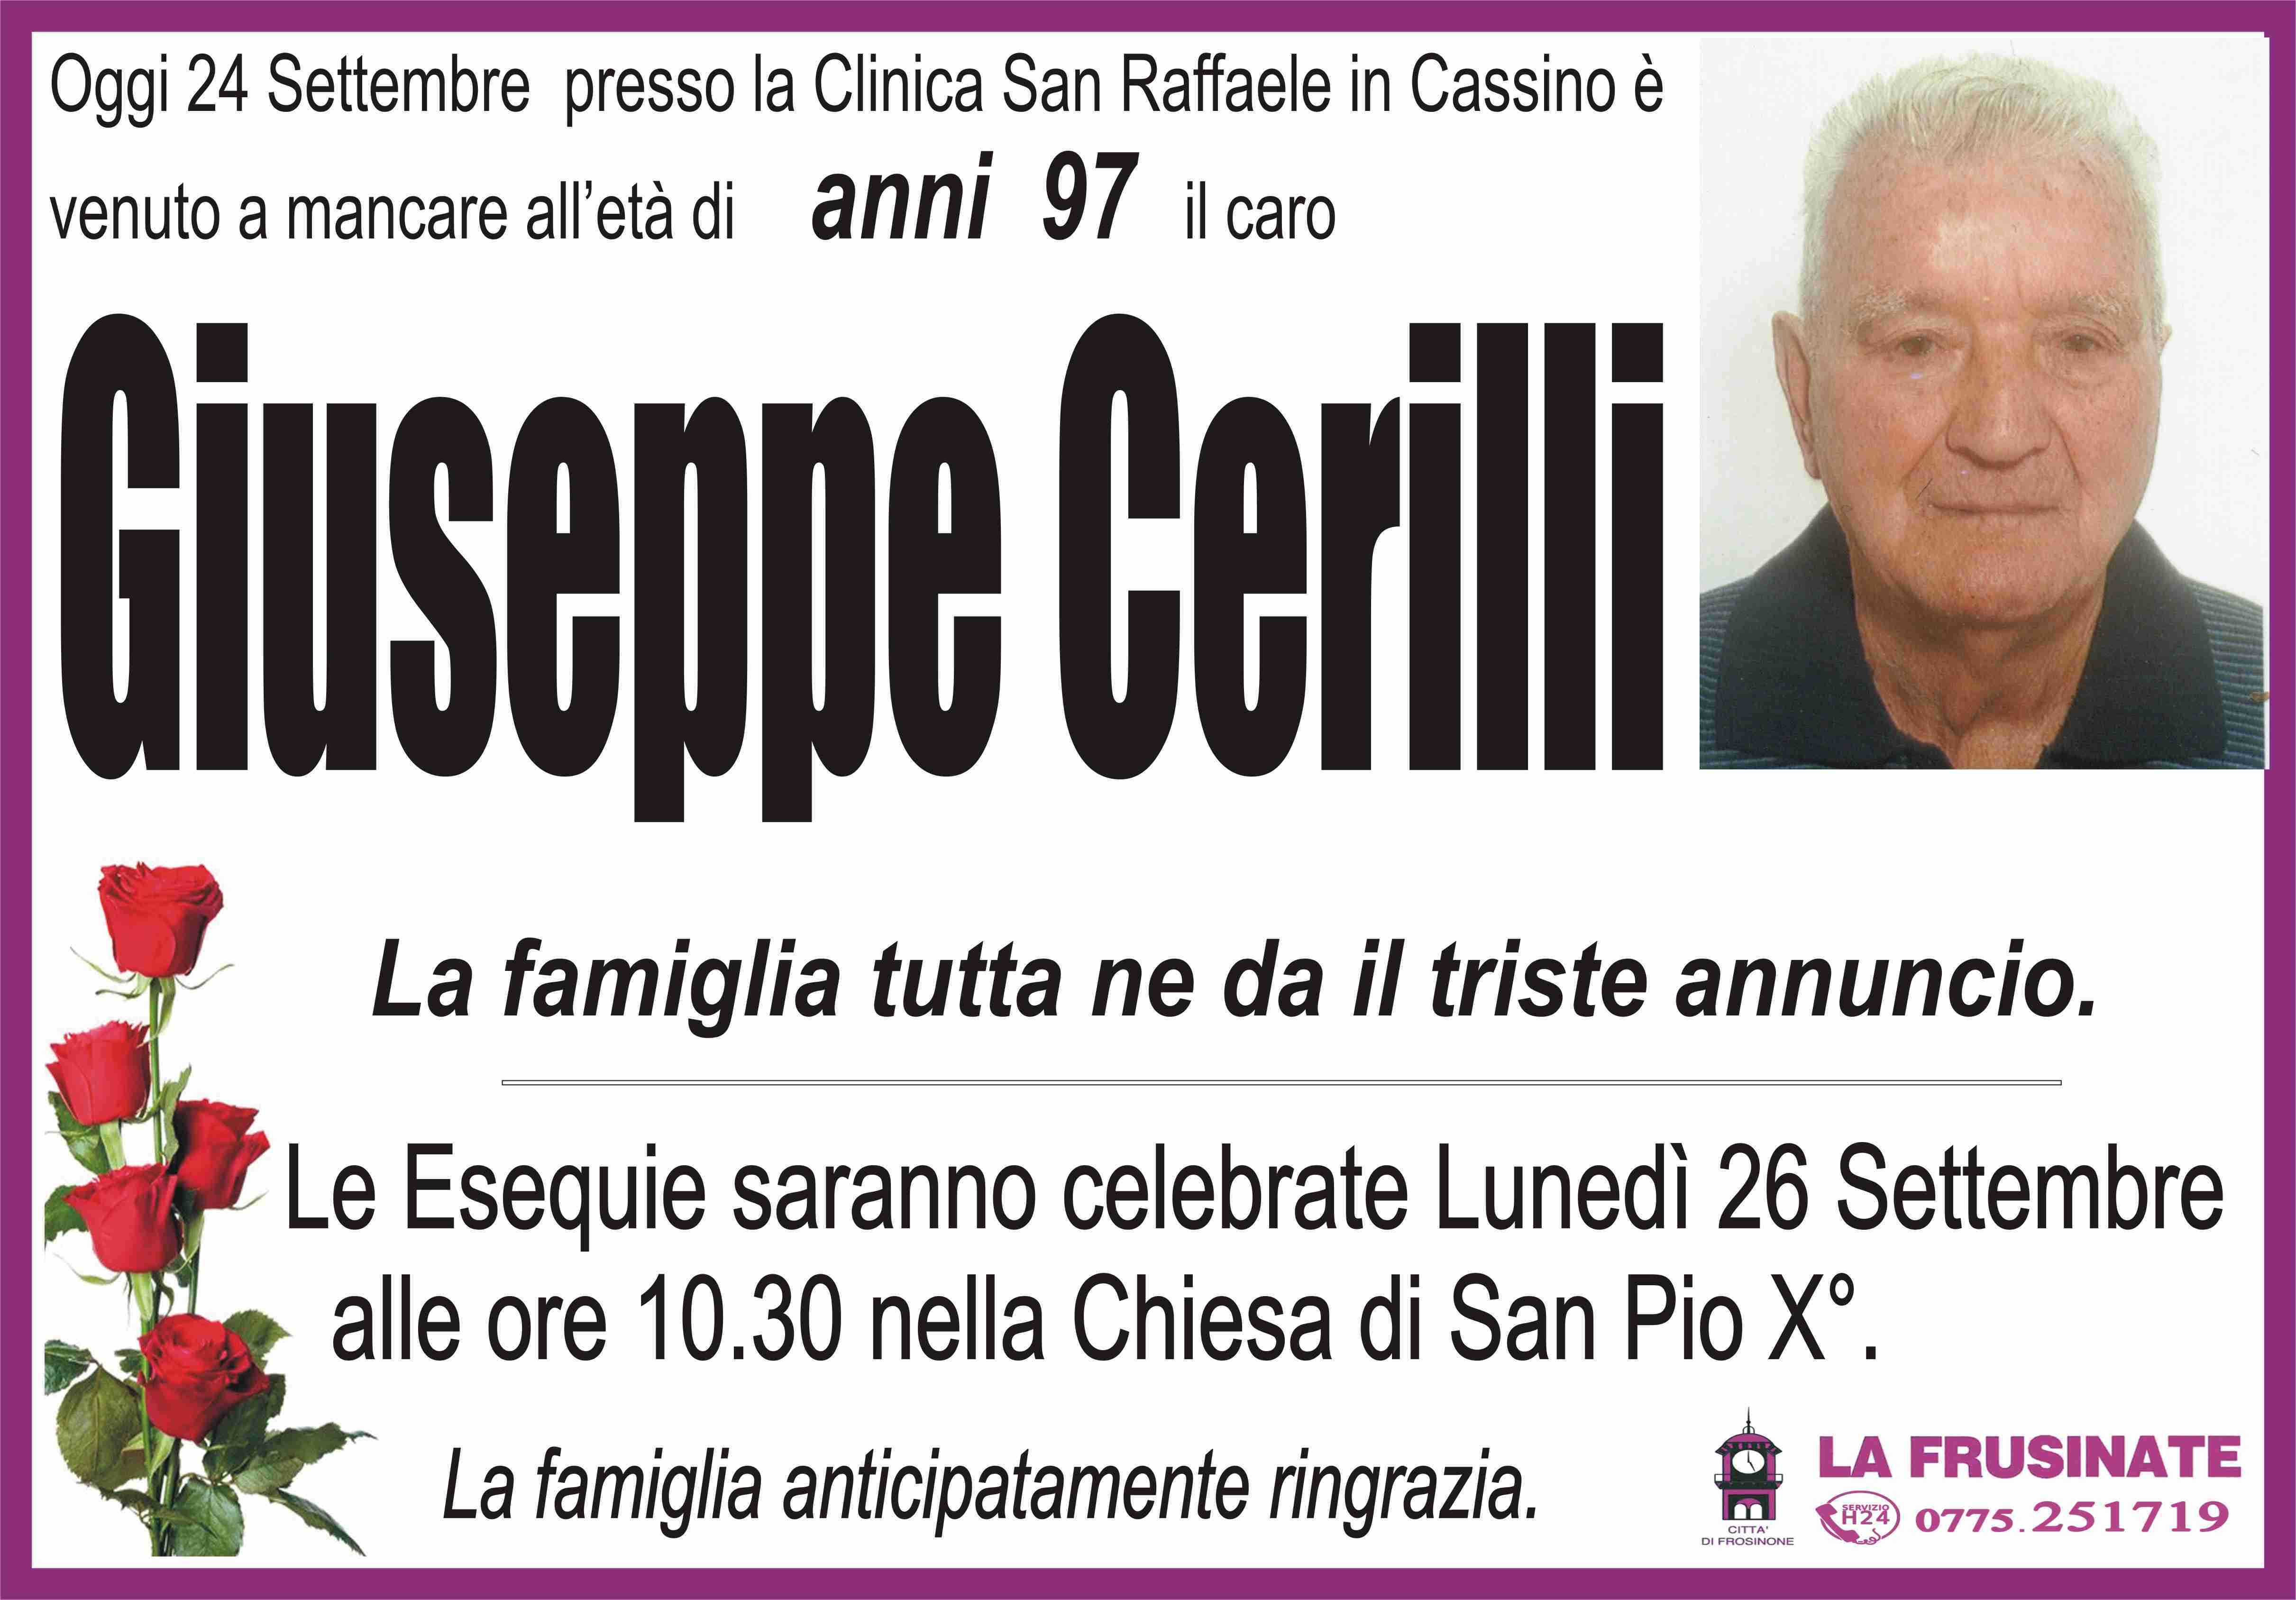 Giuseppe Cerilli